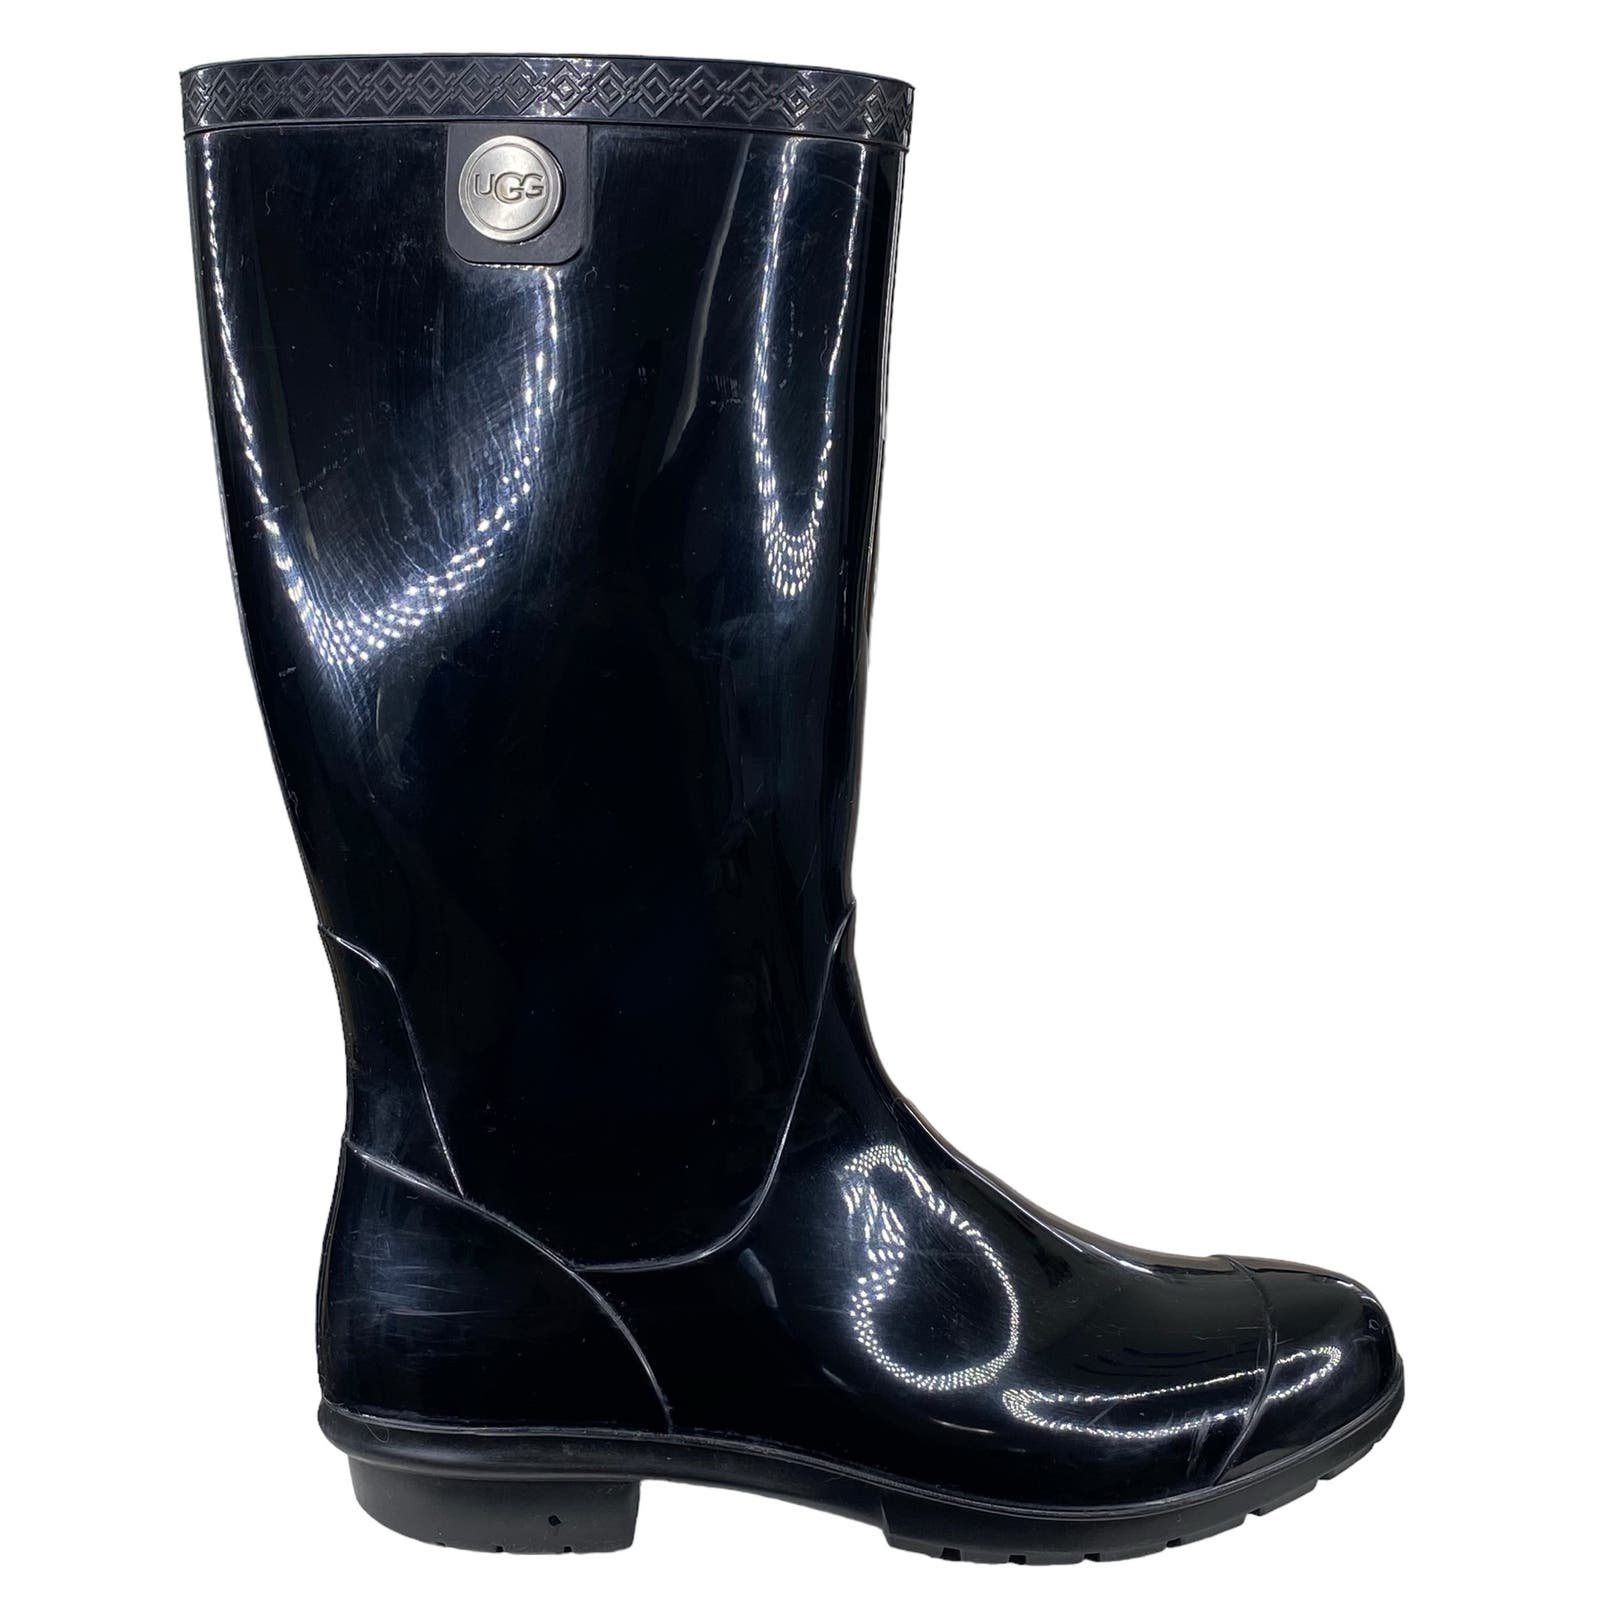 UGG Women’s Black Waterproof Rain Boots Size US 9 NUJ9eplMA